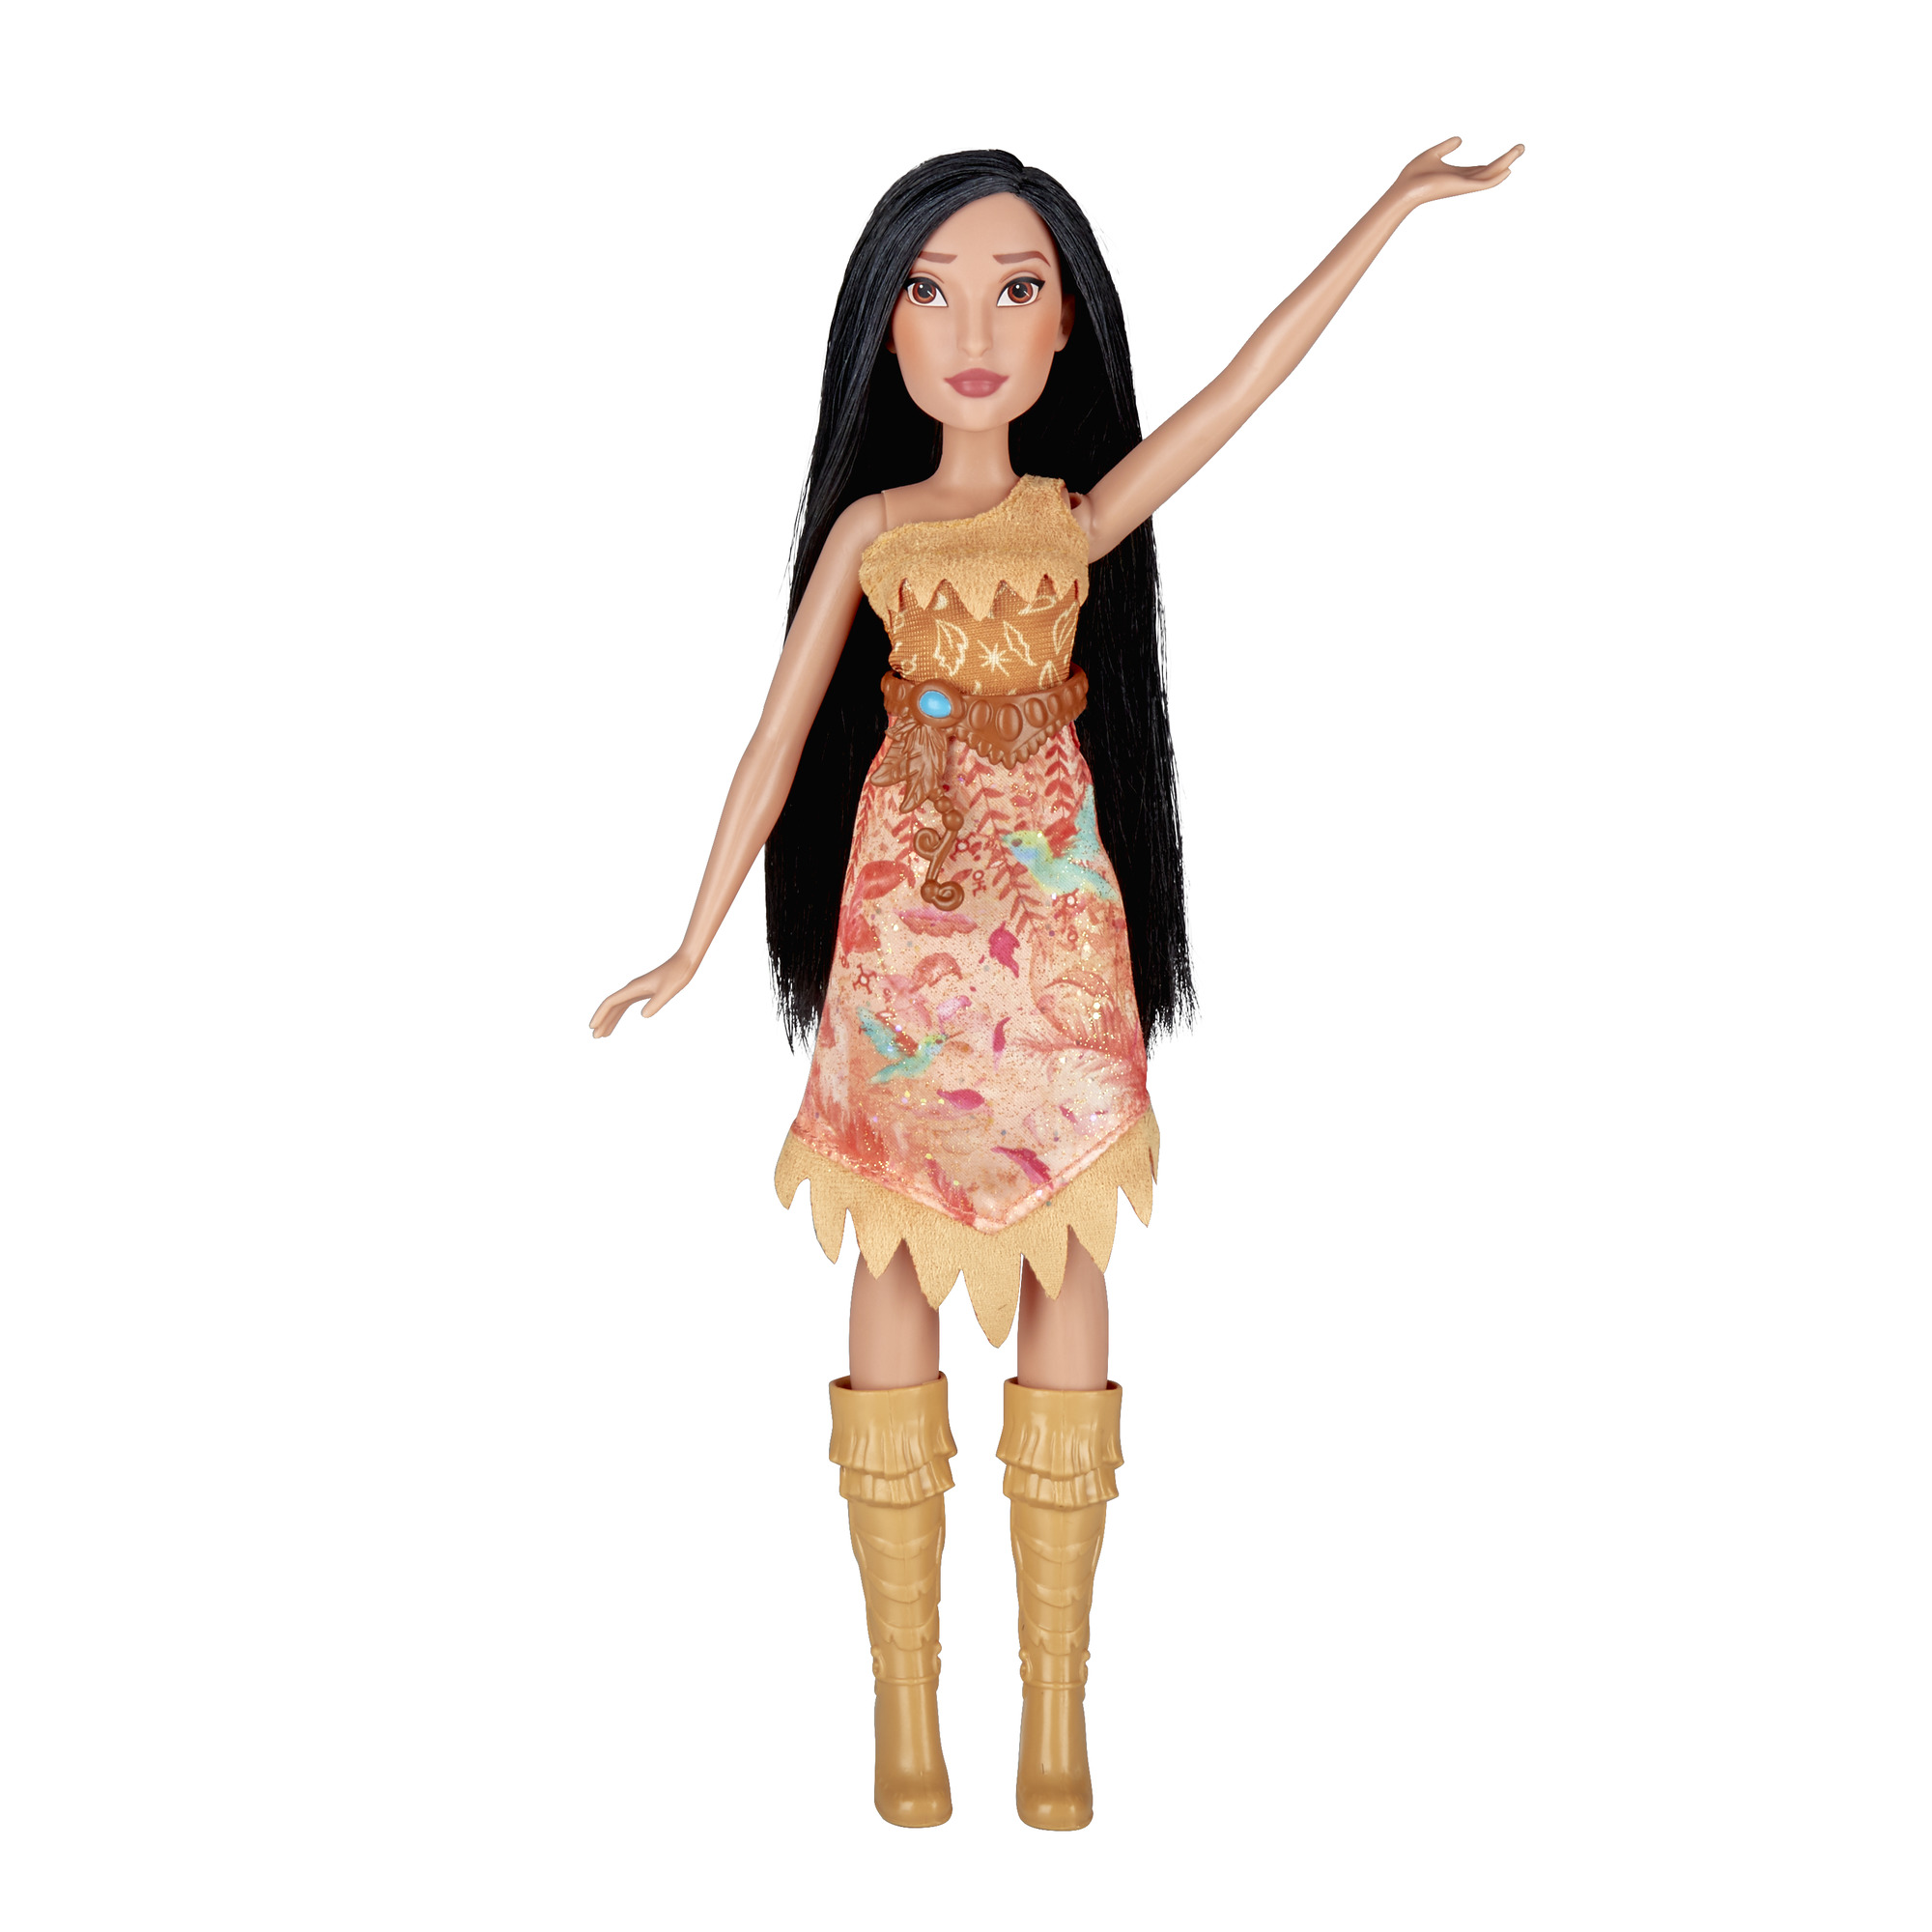 Disney Princess Royal Shimmer Pocahontas Doll - image 3 of 5